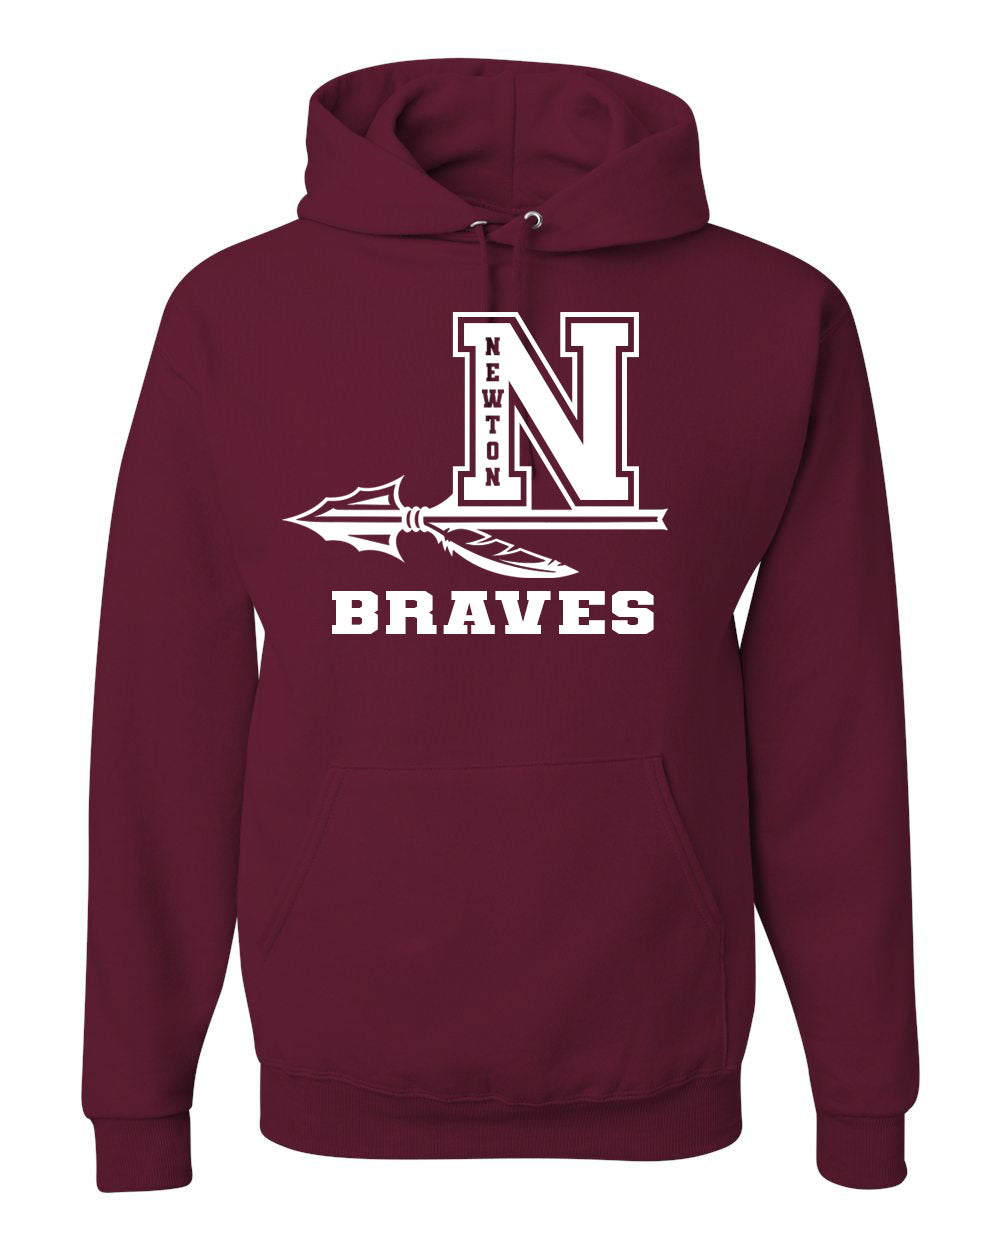 Newton Braves Hooded Sweatshirt